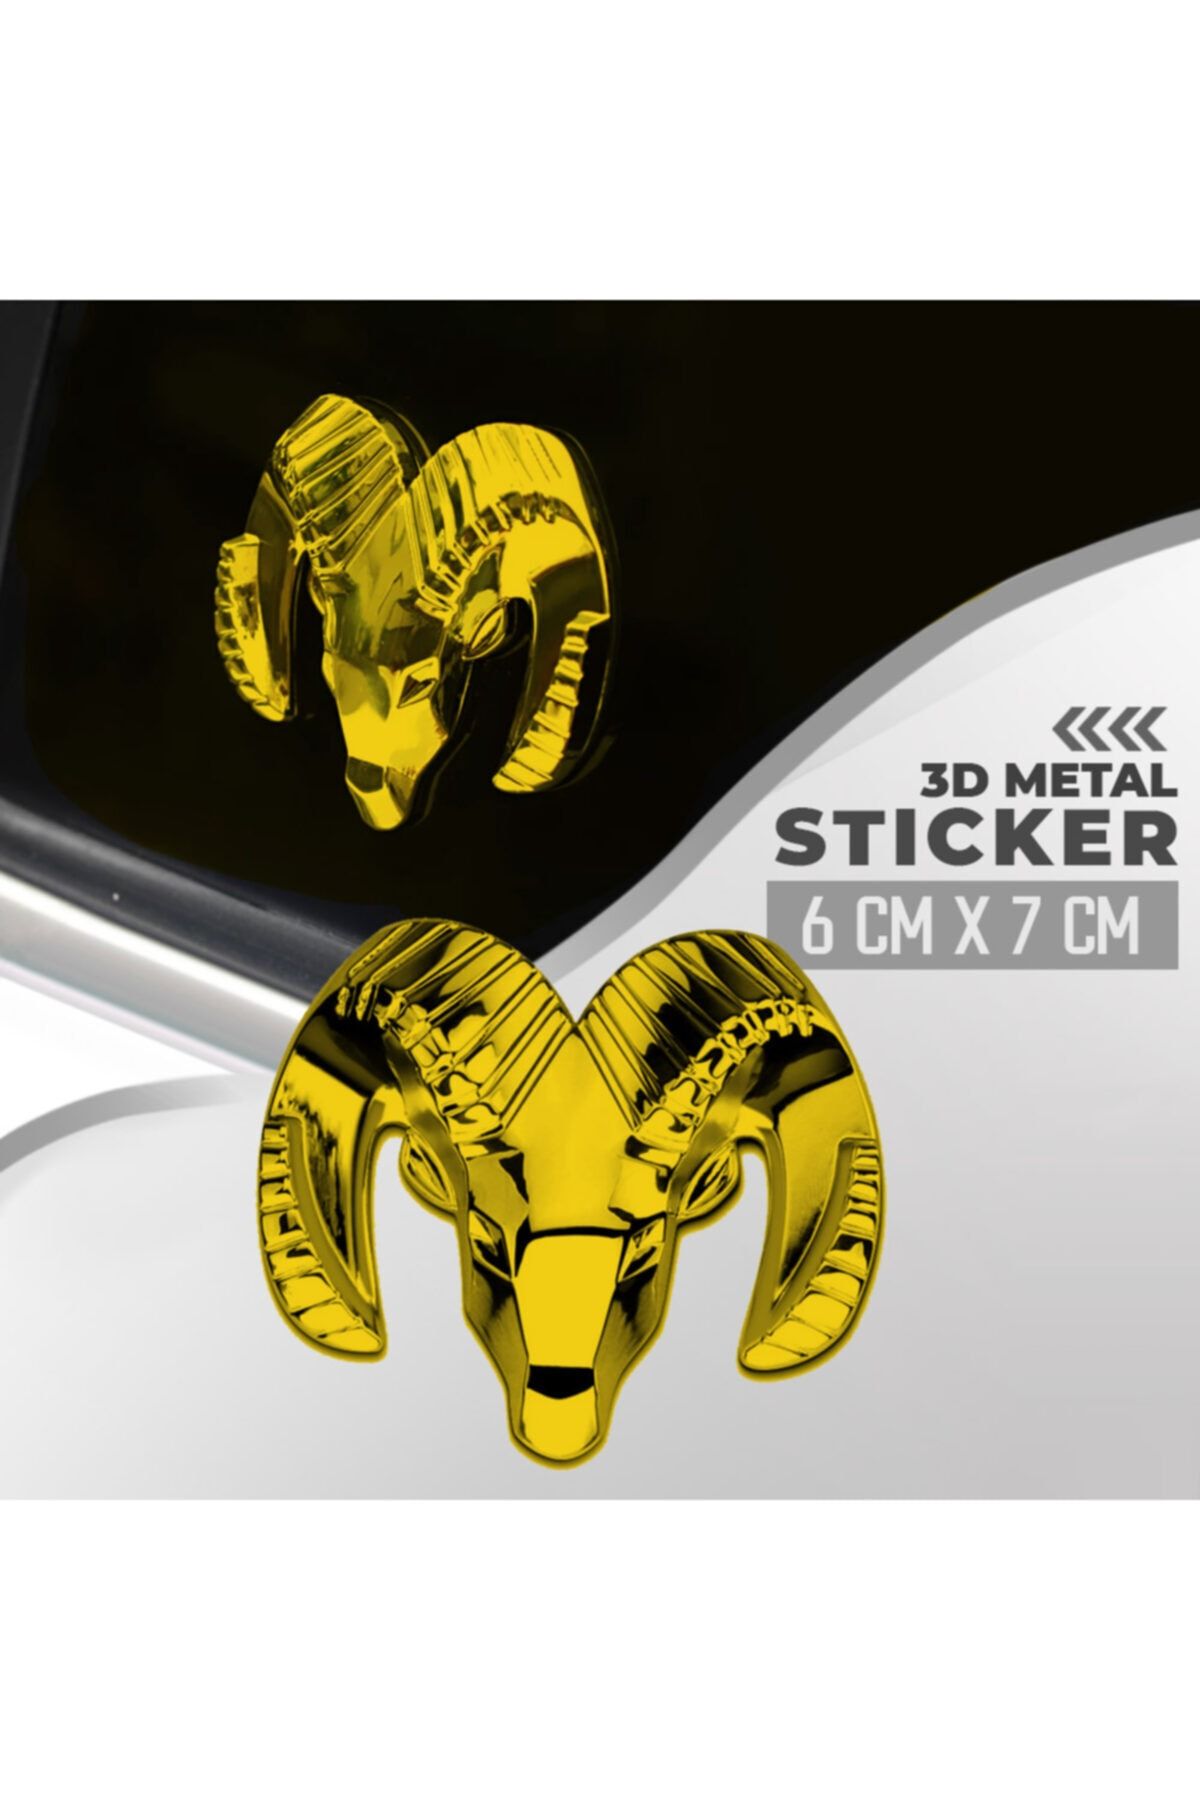 C9 Dodge Altın Rengi Paslanmaz Metal Arma Sticker Yapışkanlı 6 cm X 7 cm